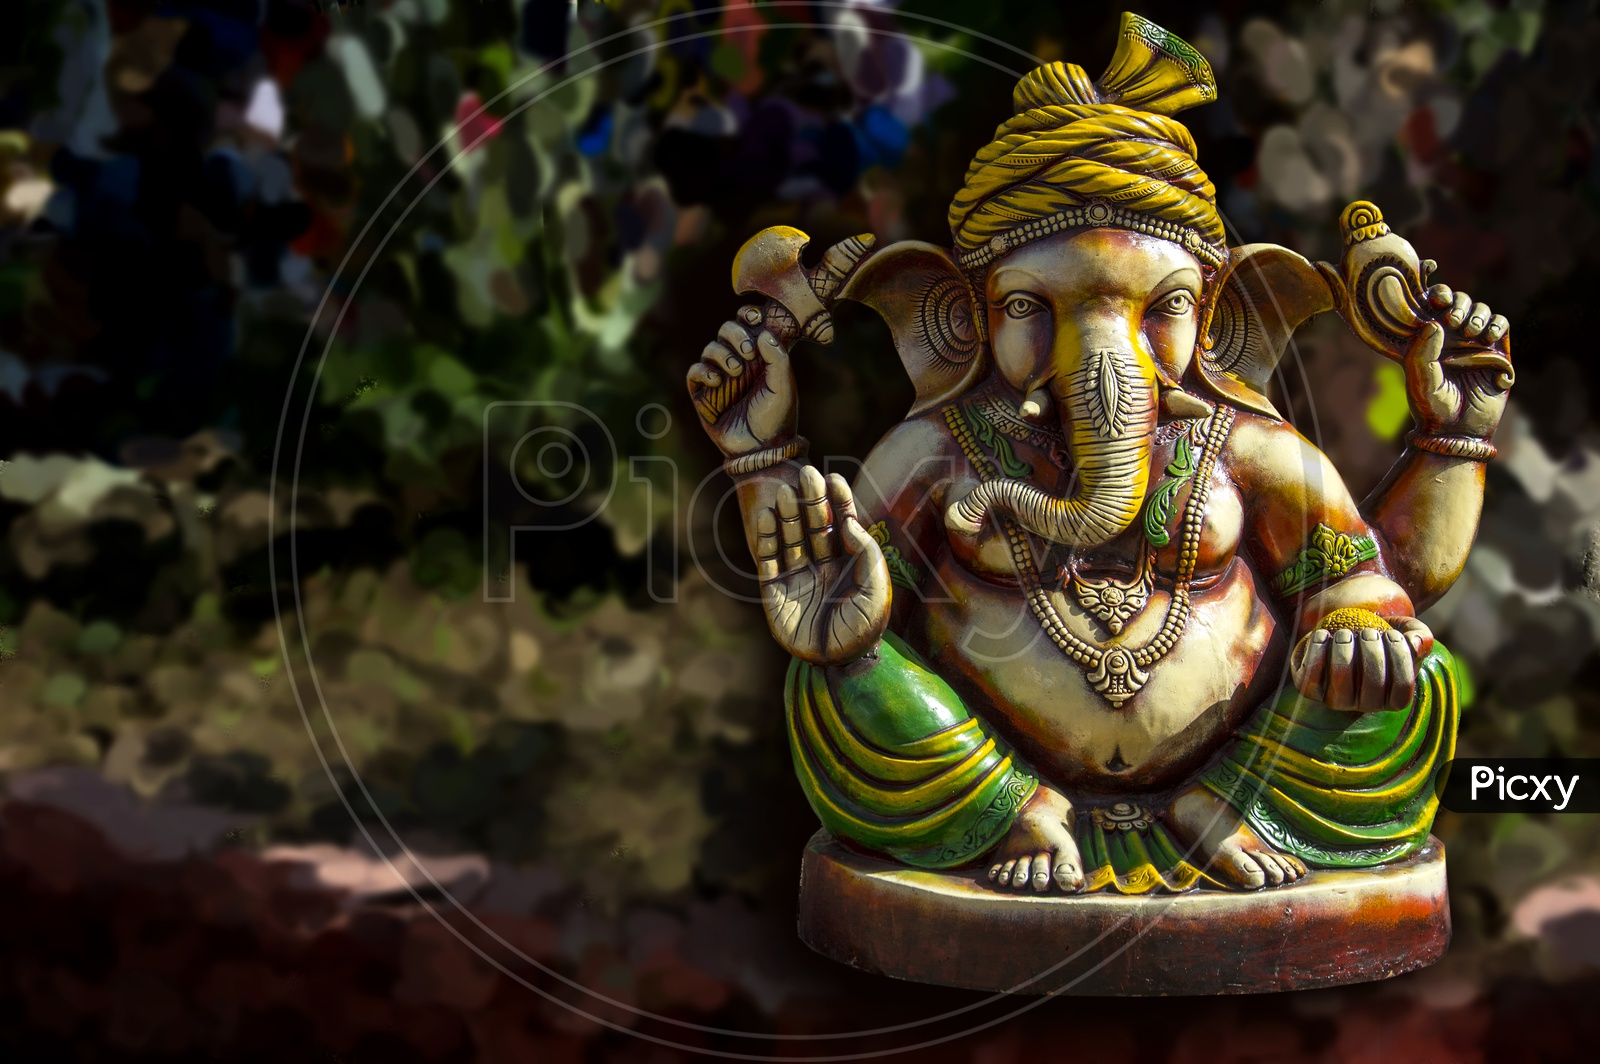 Elegant Idol of Lord Ganesh